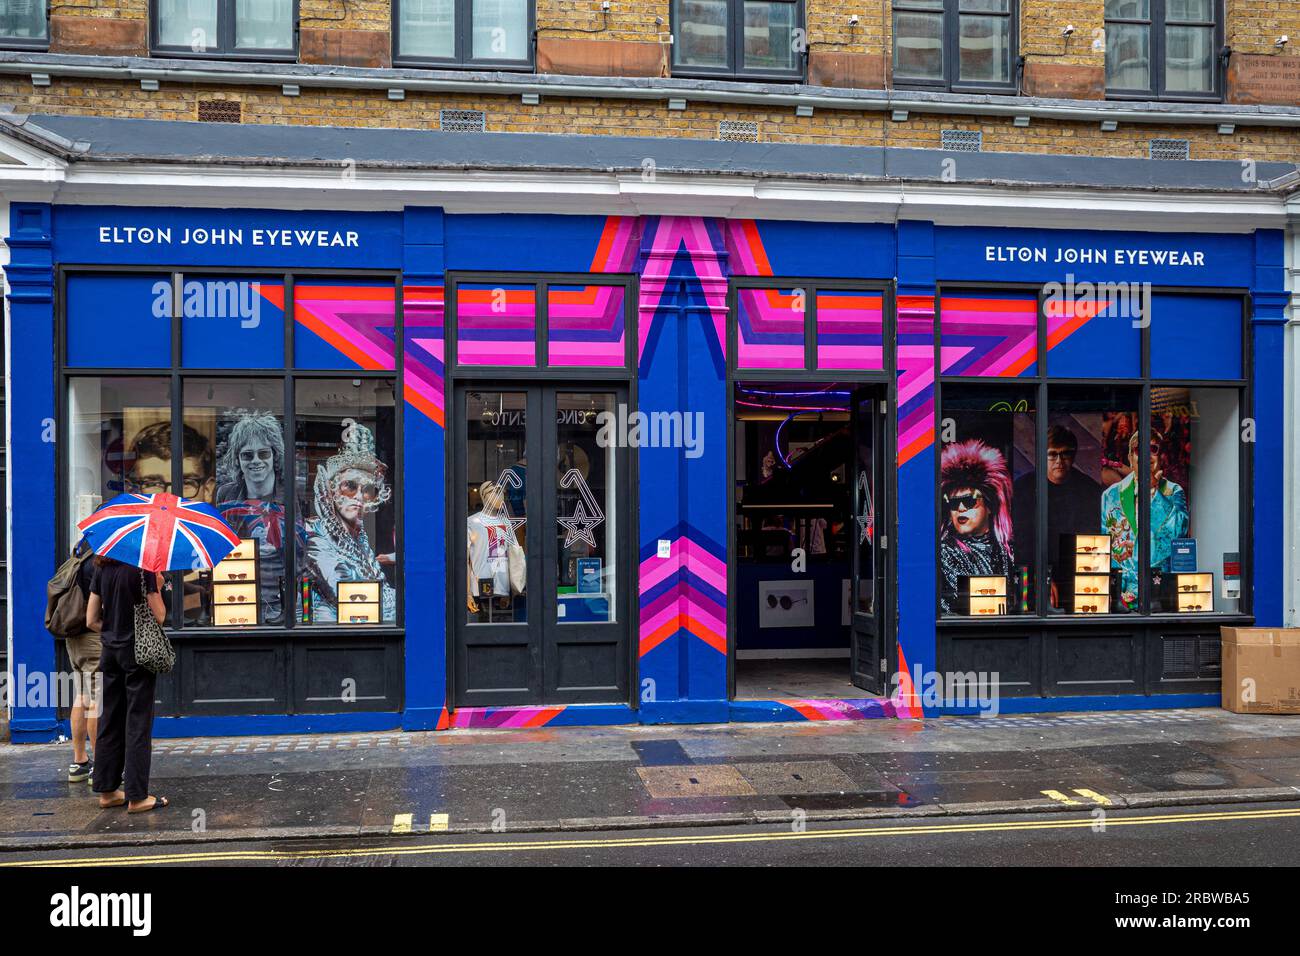 Elton John Eyewear Store In Soho London. Elton John Eyewear Pop-Up-Shop im 59 Greek St Soho London UK. Elton John Eyewear Pop-up-Store London Soho. Stockfoto